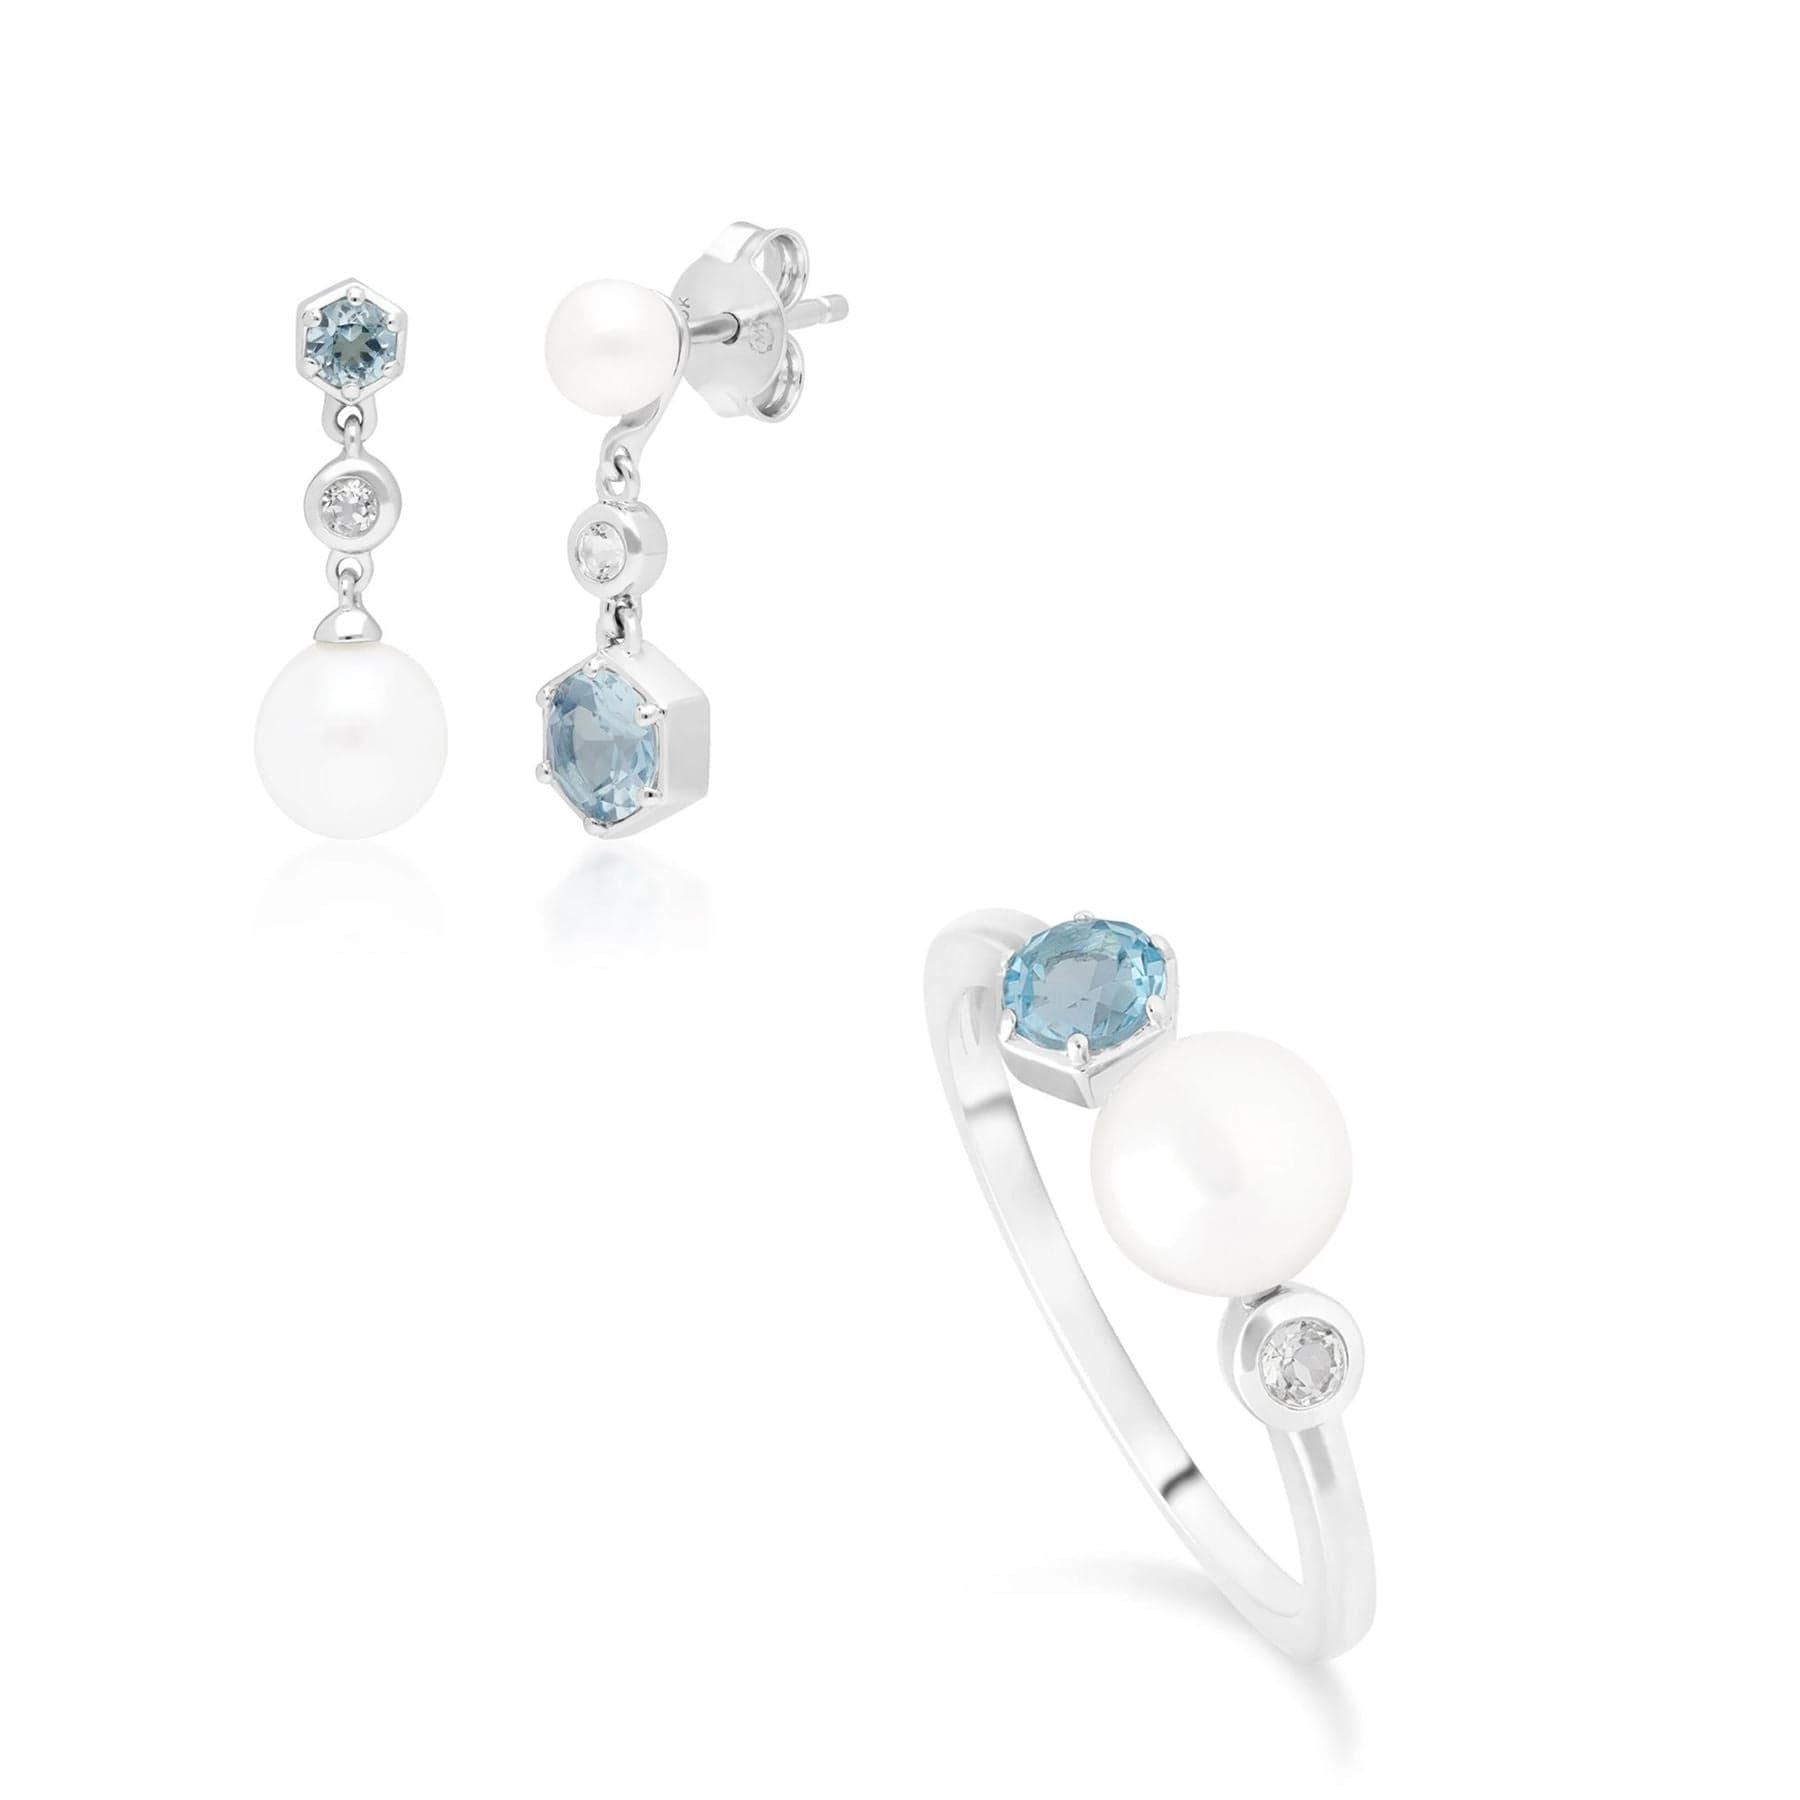 270E027201925-270R057601925 Modern Pearl & Topaz Ring & Drop Earring Set in Silver 1